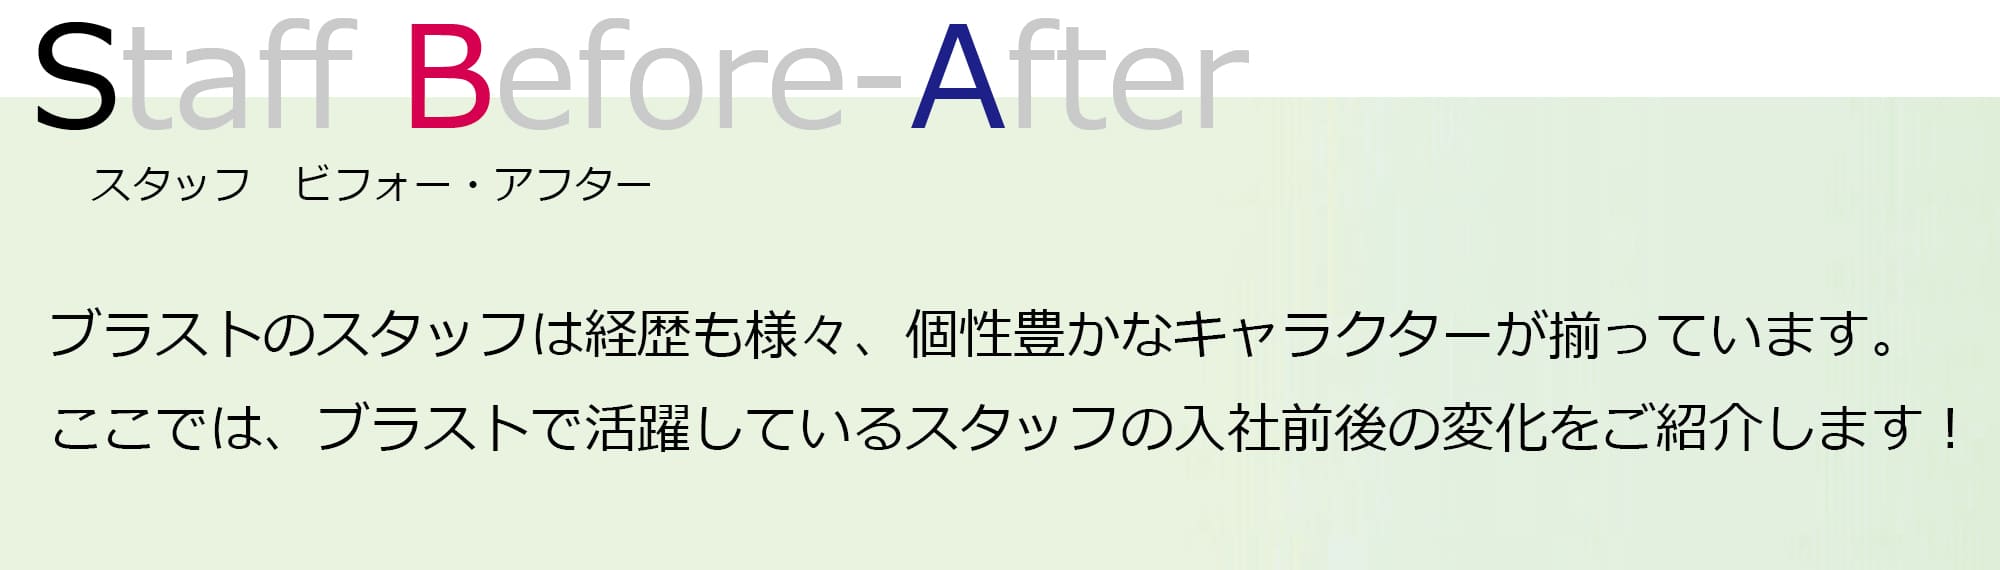 スタッフBefore-After